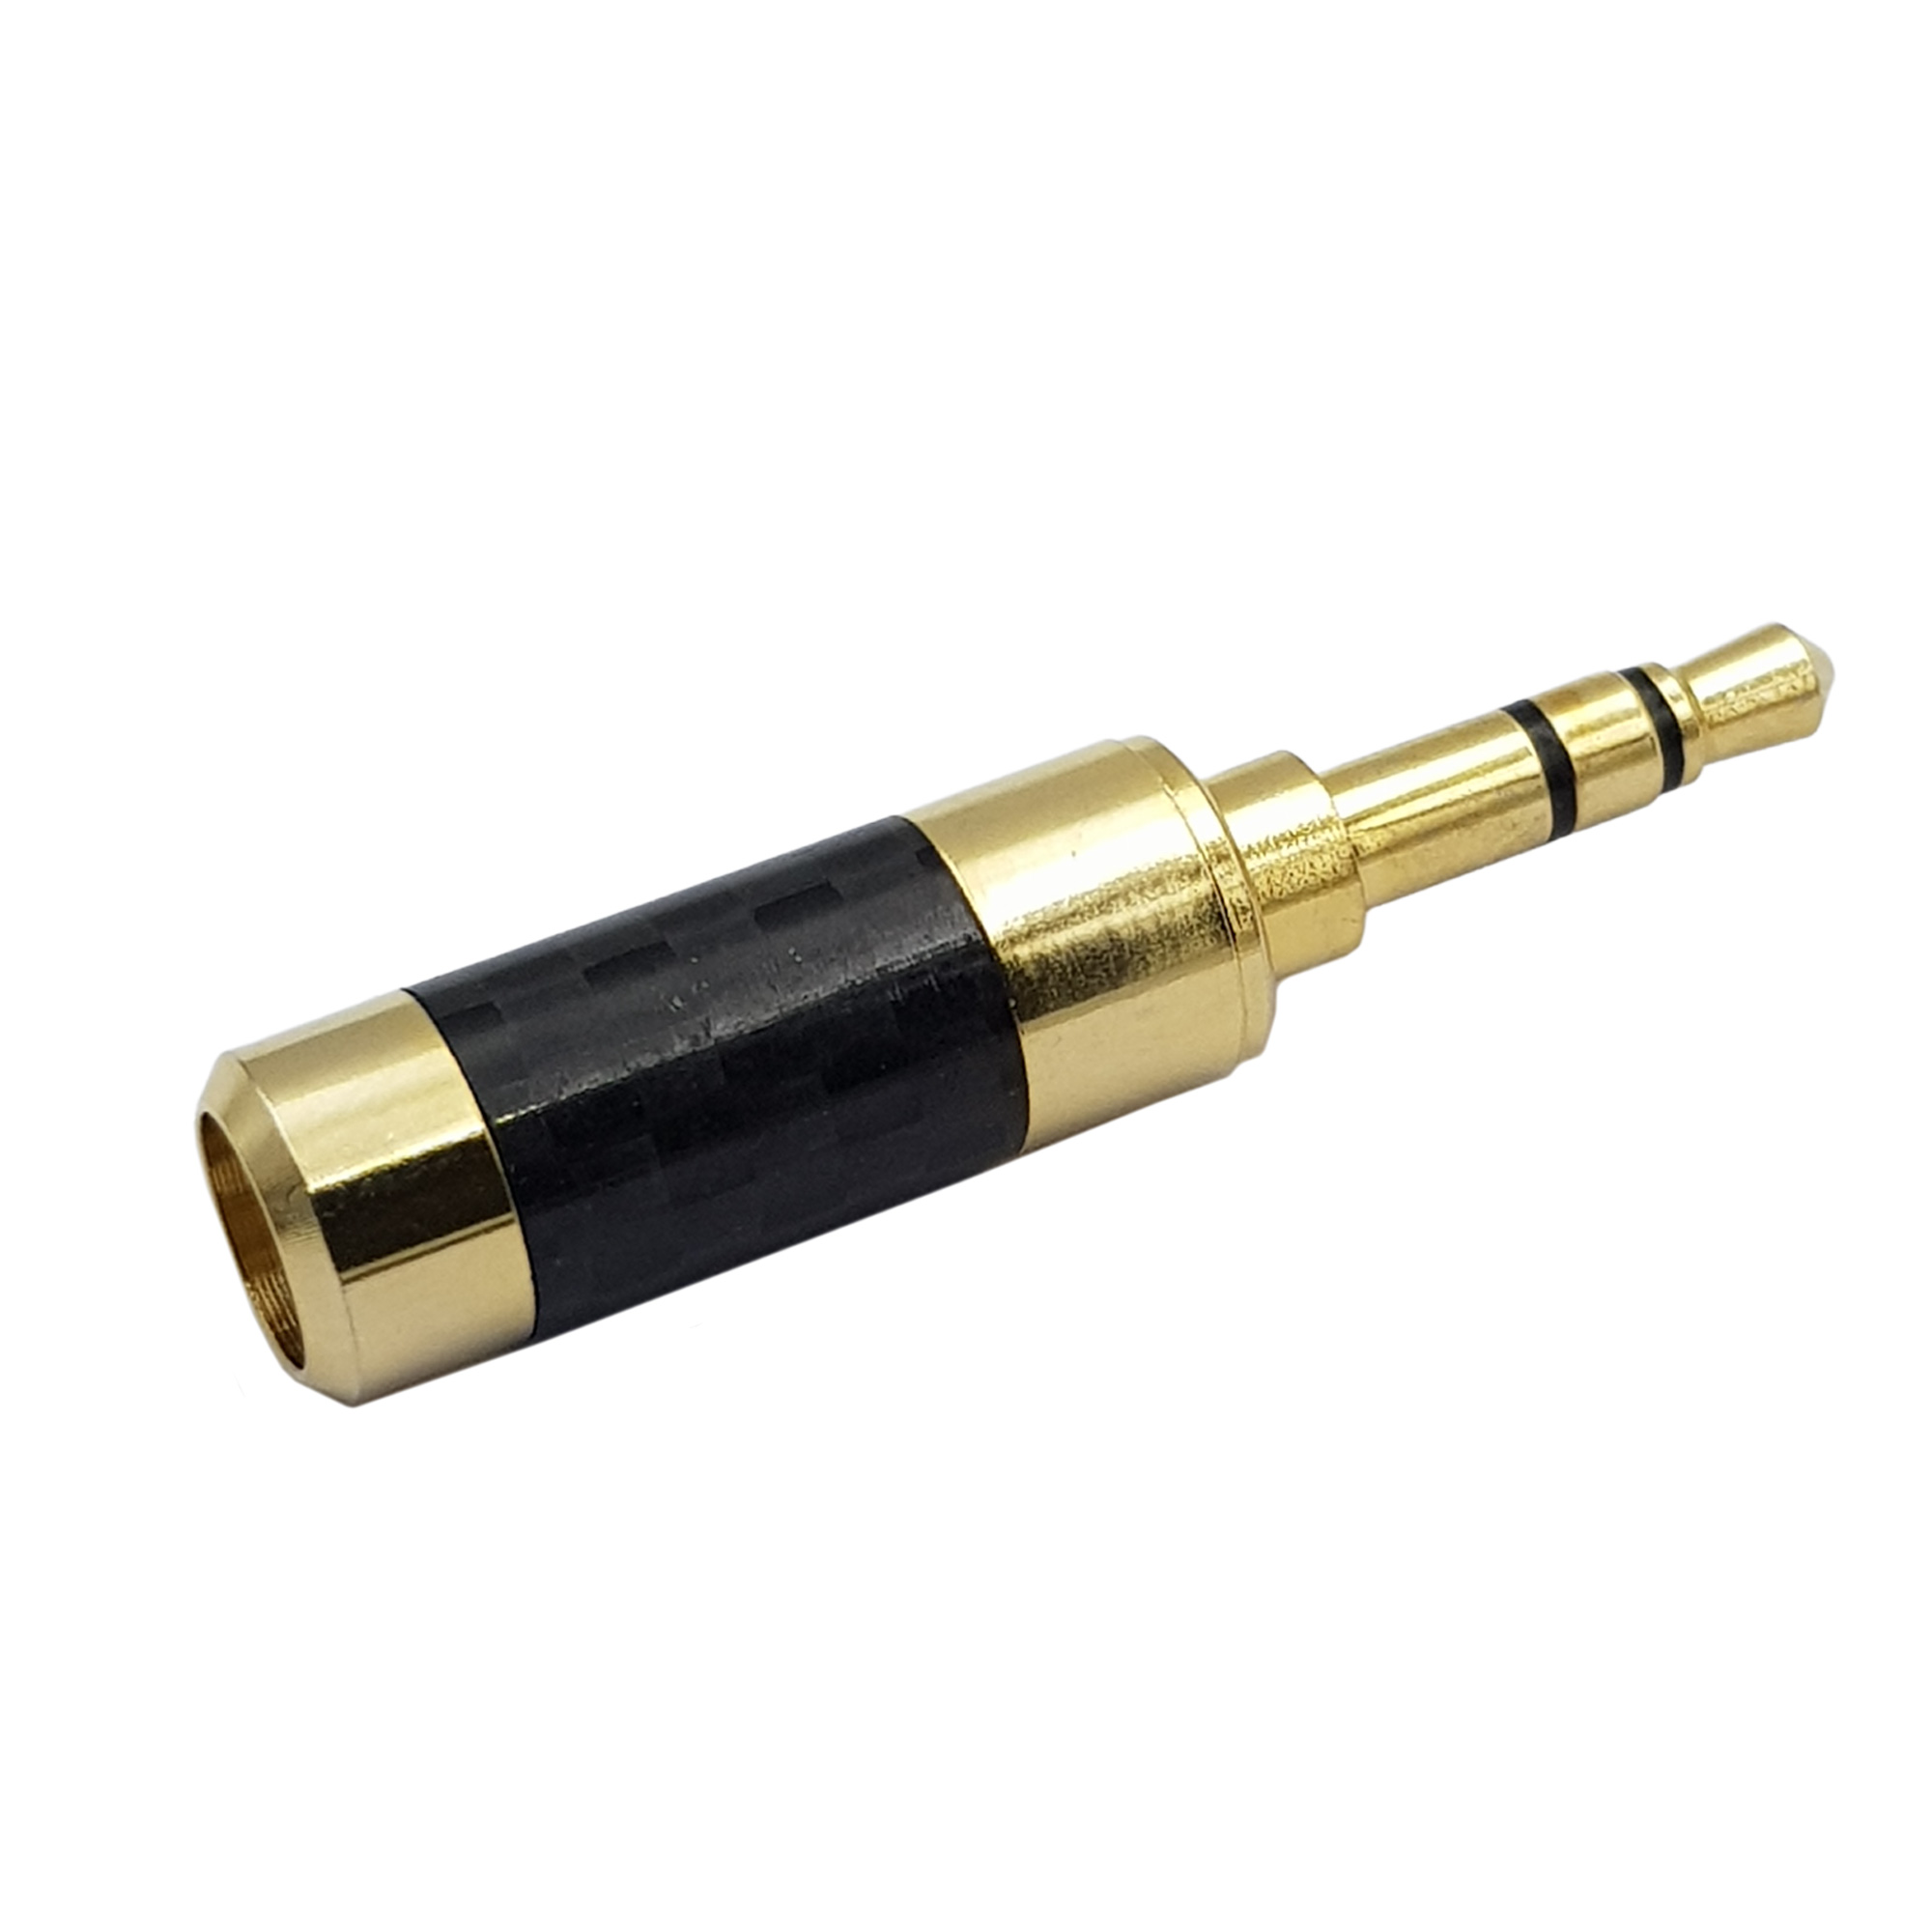 Jack âm thanh audio 3.5 mm carbon fiber mạ vàng